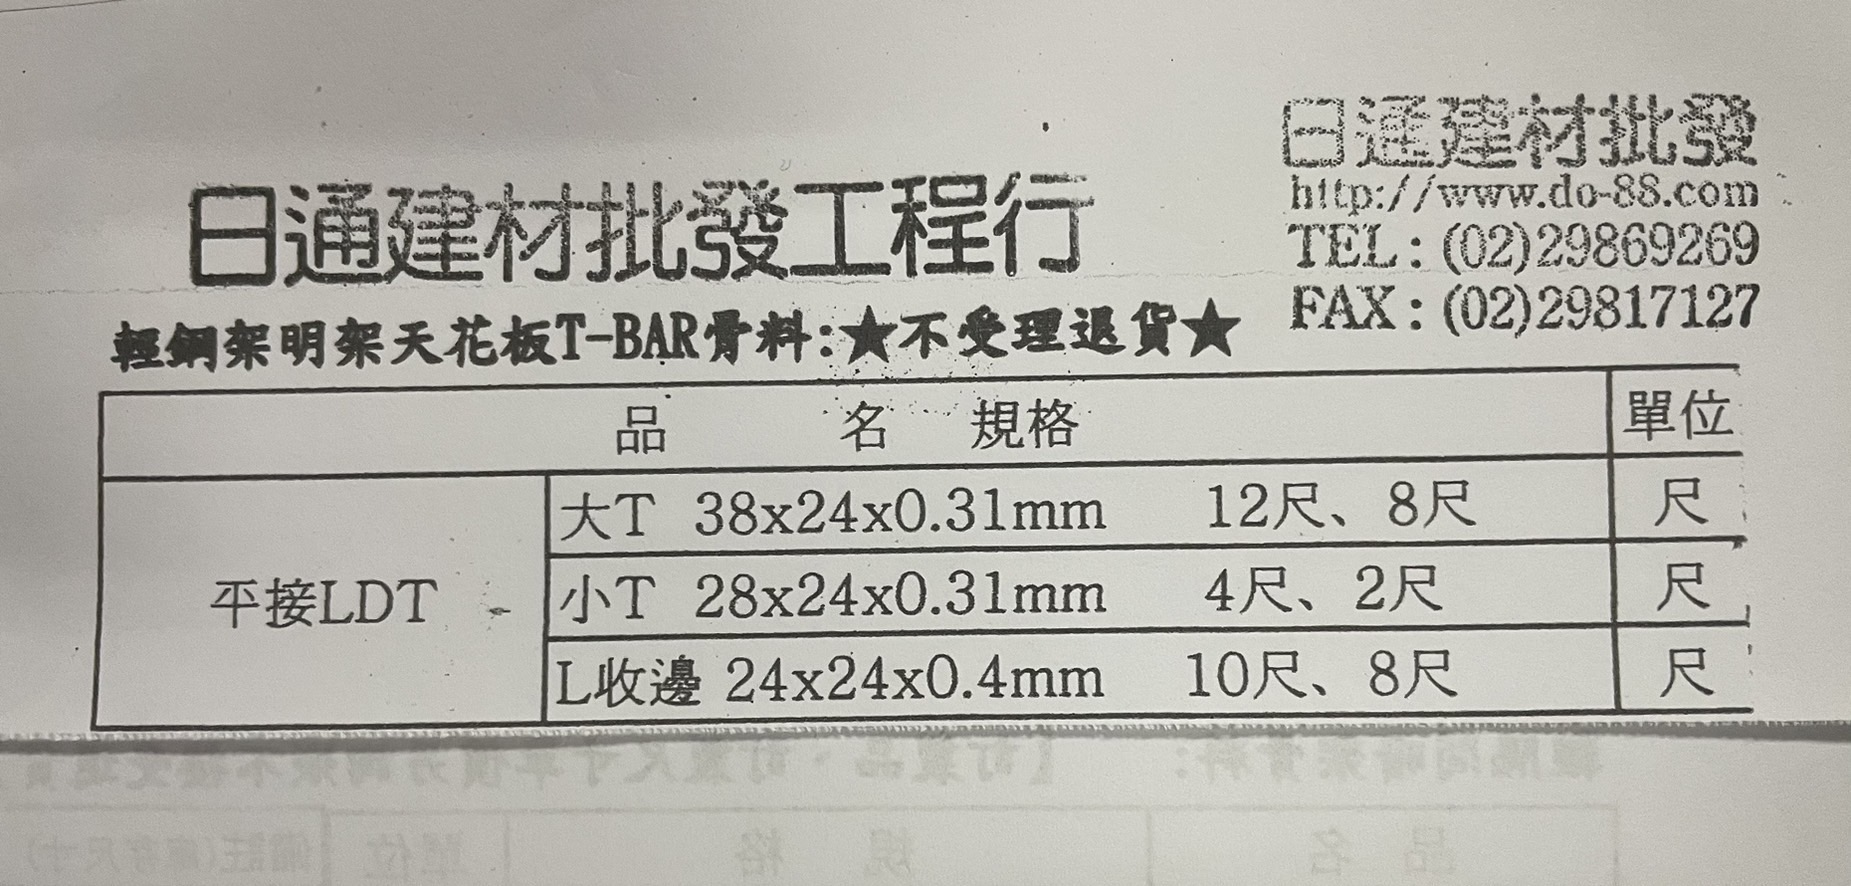 天花輕鋼架骨料平接LDT 大T38x24x0.31mm(以支算)(黑色、中黑、紅色、柚木)8尺